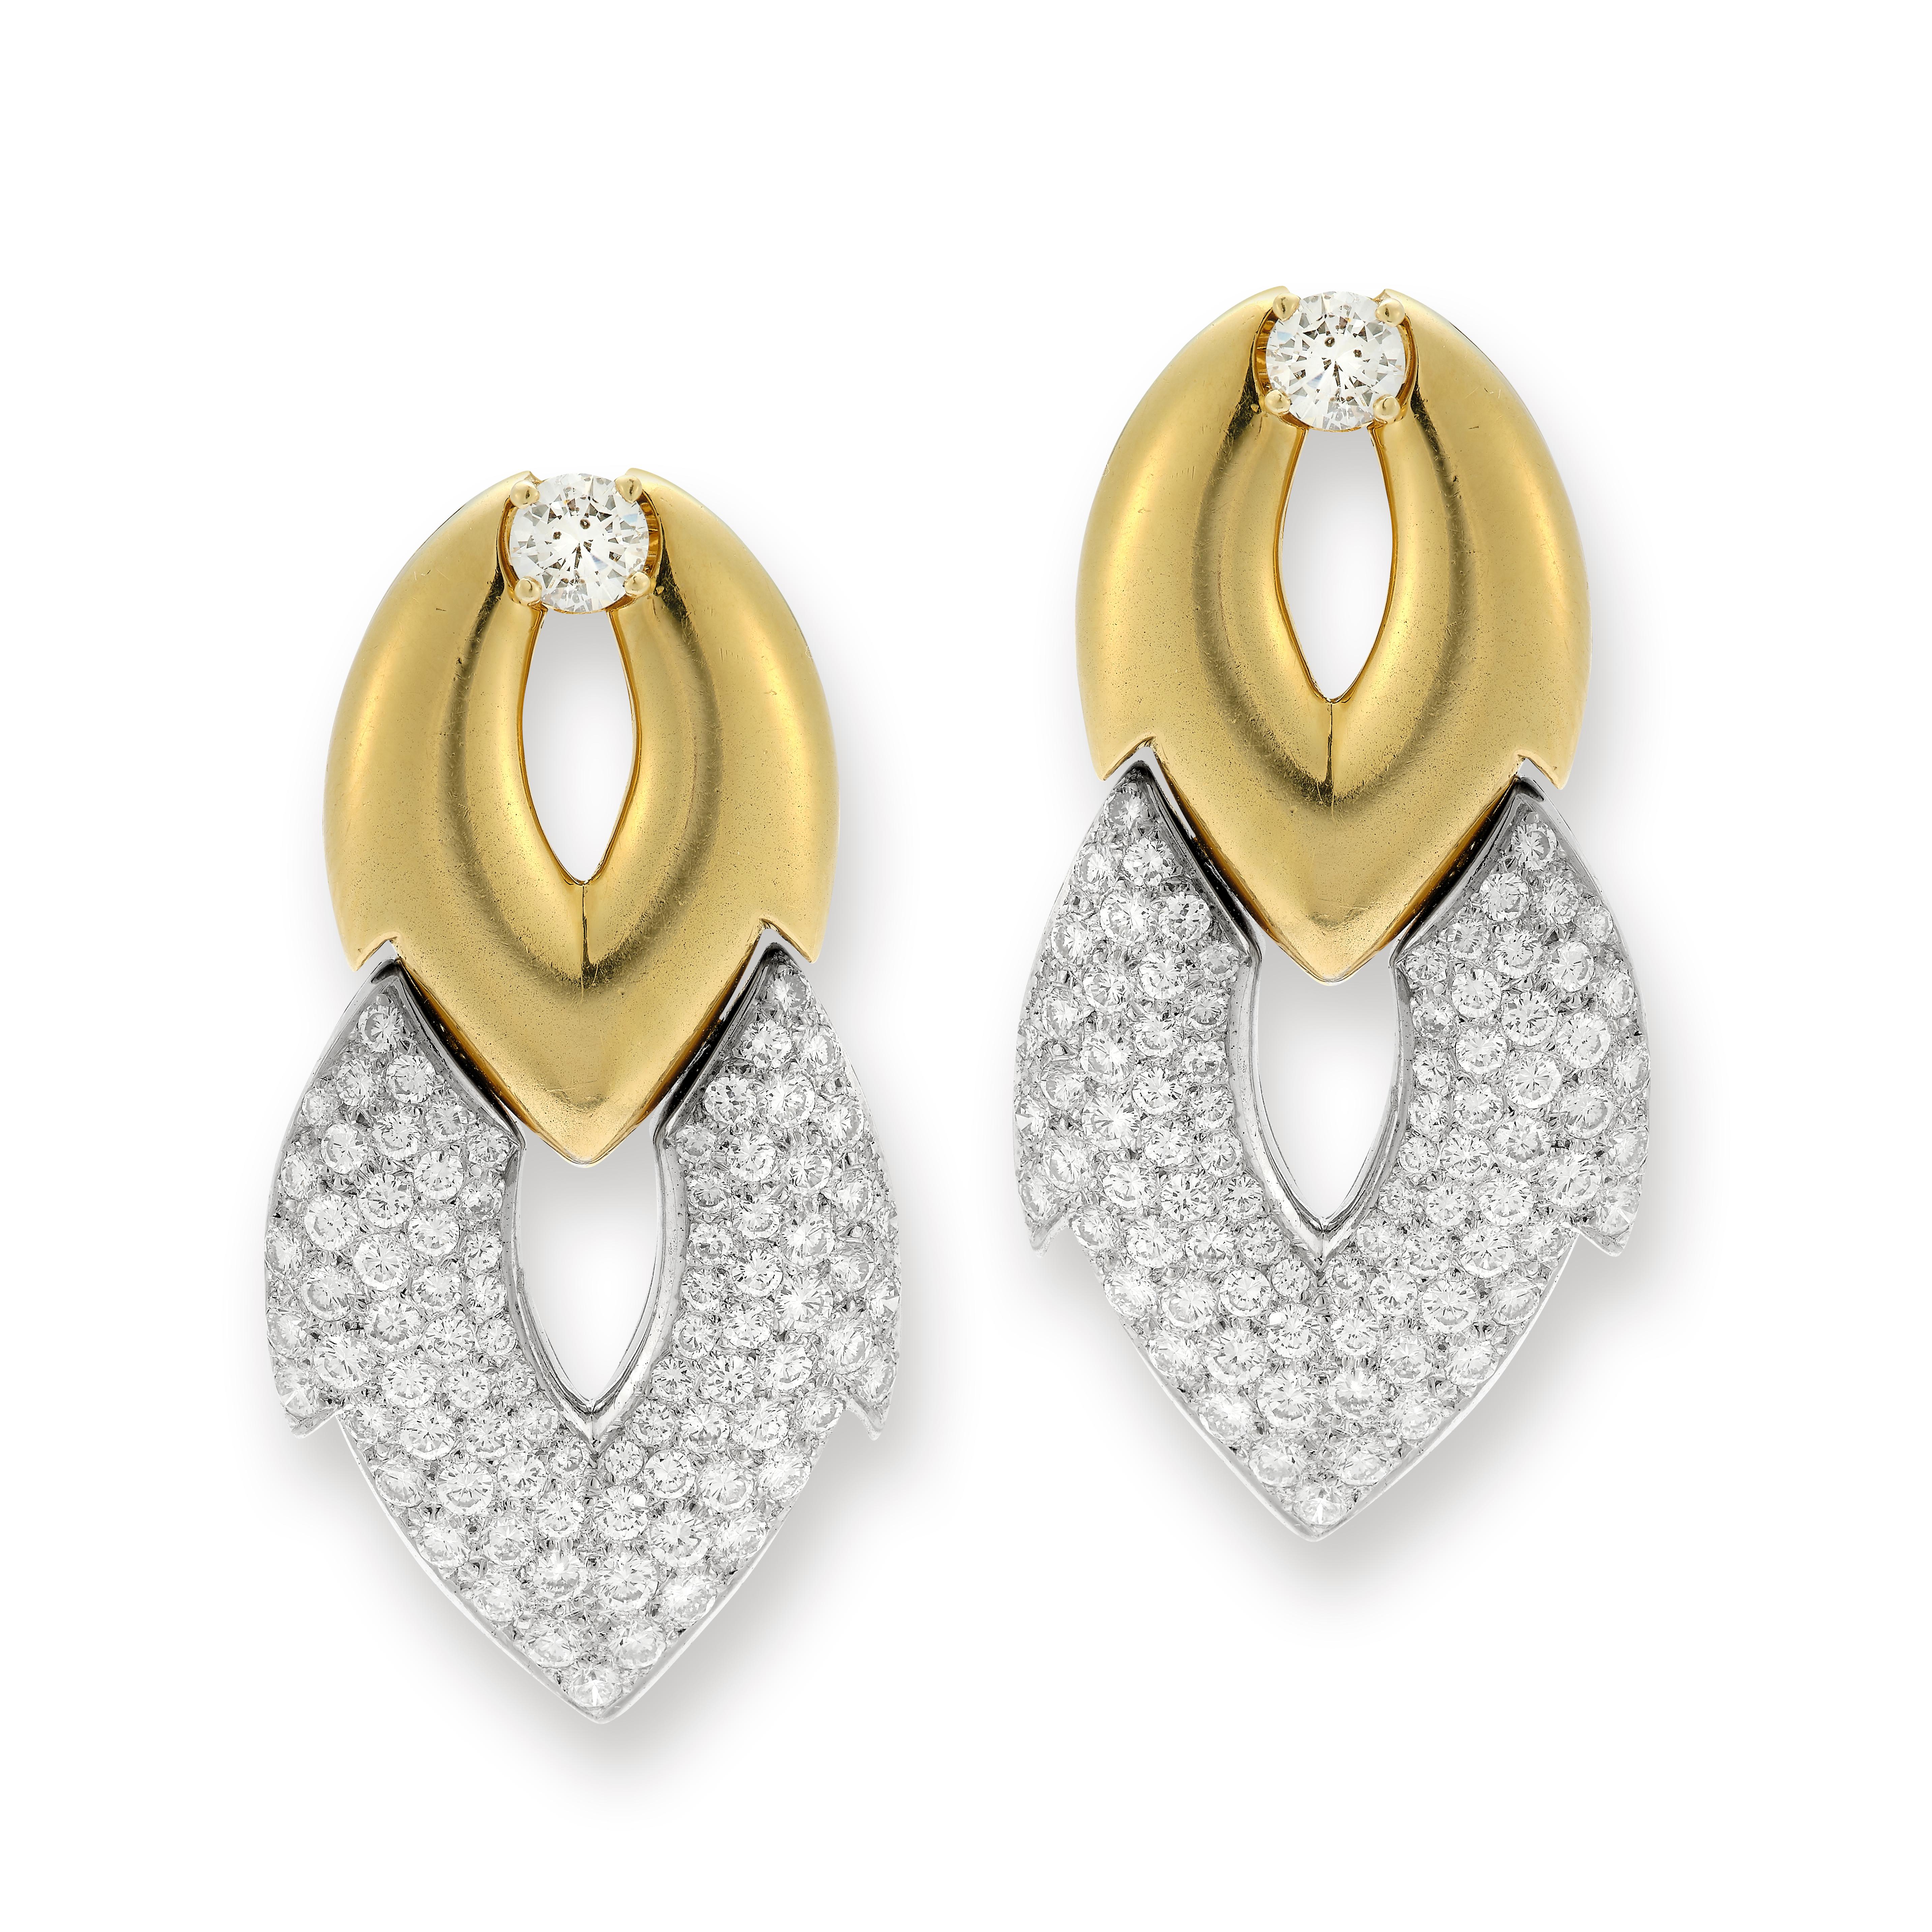 Diamant-Türklopfer-Ohrringe

2 runde Diamanten von ca. 1,30 Karat &  162 Pflasterdiamanten von ca. 8,39 Karat in 18 Karat Gelbgold.

Abmessungen: 2